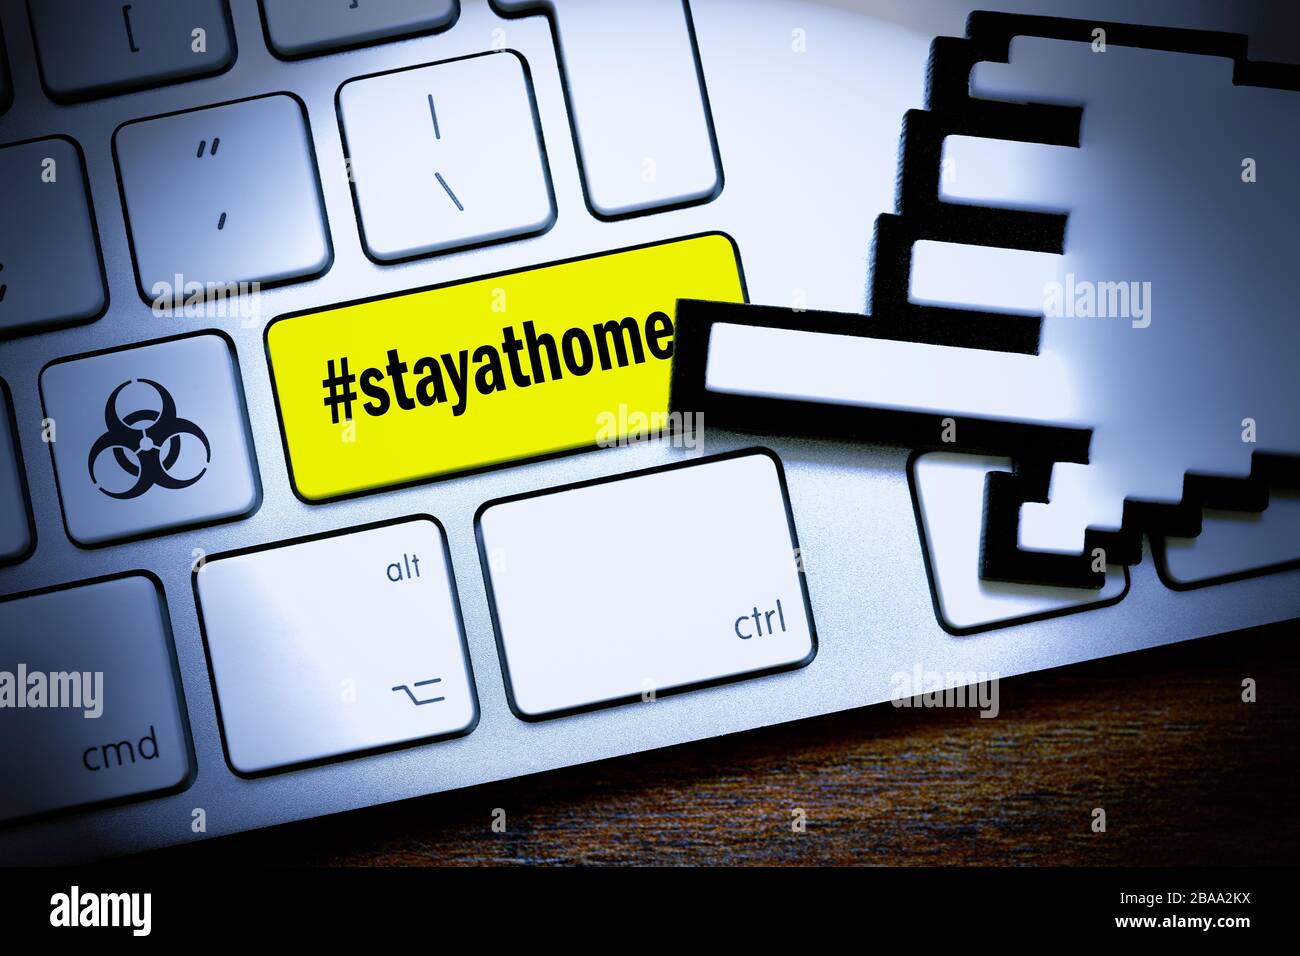 PHOTOMONTAGE, clé informatique avec le signe de danger Hashtag #stayathome et biologie, FOTOMONTAGE, ComputerTaste mit dem Hashtag #stayathome und Biogefährd Banque D'Images